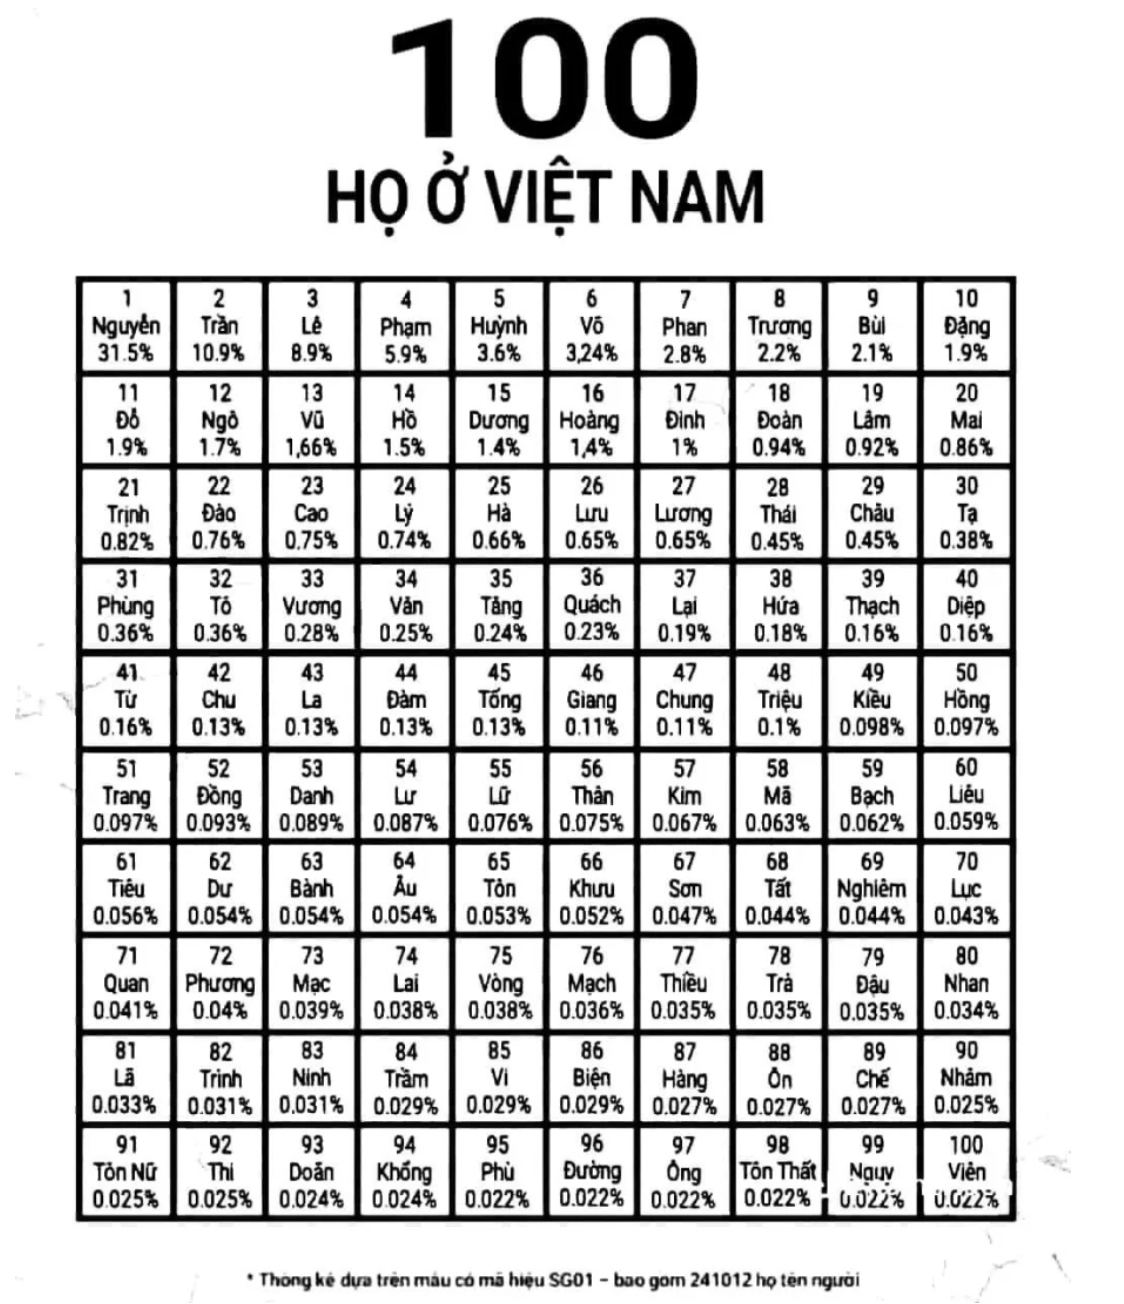 Người Việt có bao nhiêu họ?